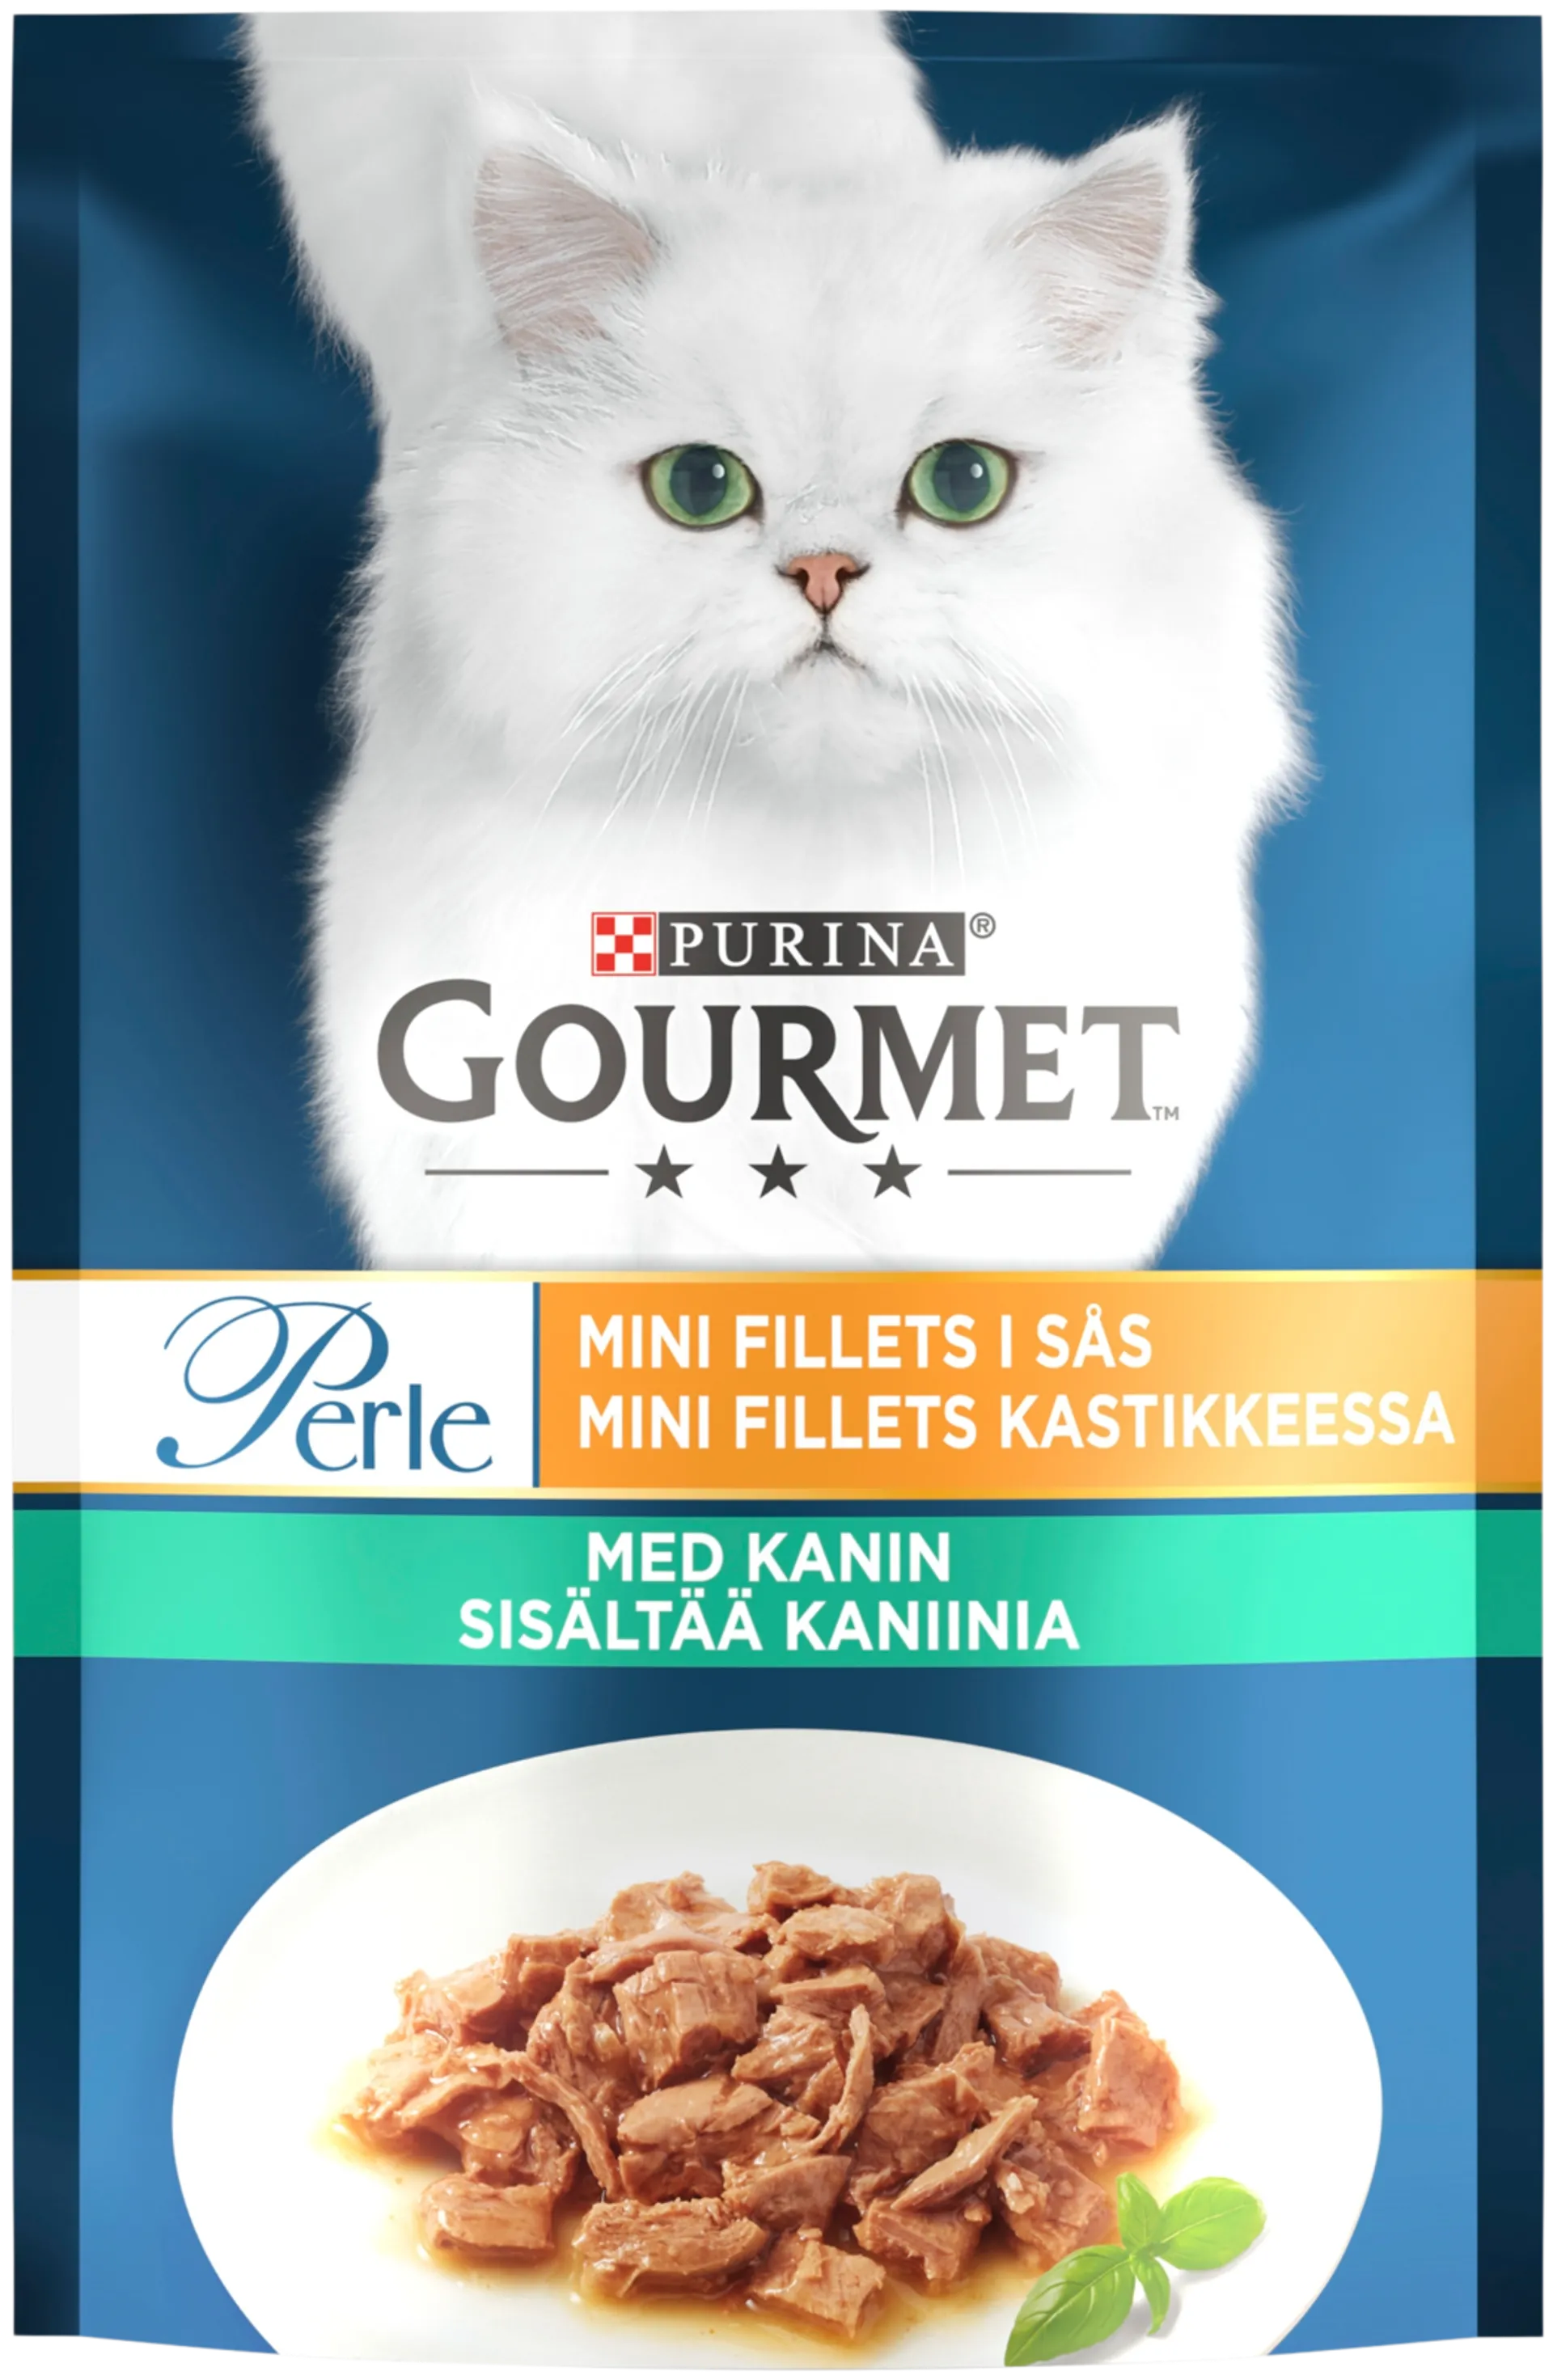 Gourmet 85g Perle Kaniinia Mini Filets kastikkeessa kissanruoka